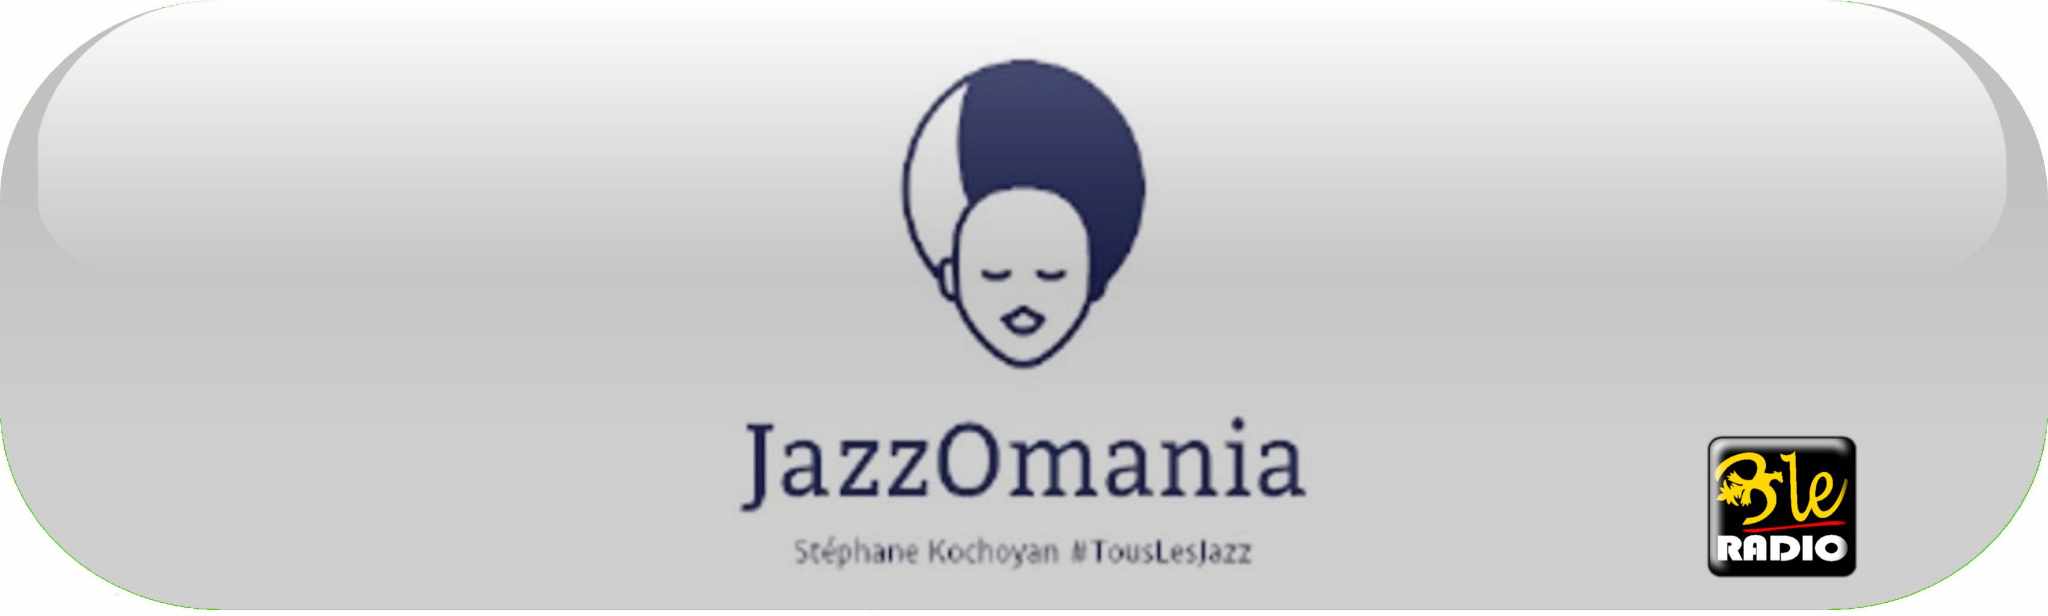 JazzOmania